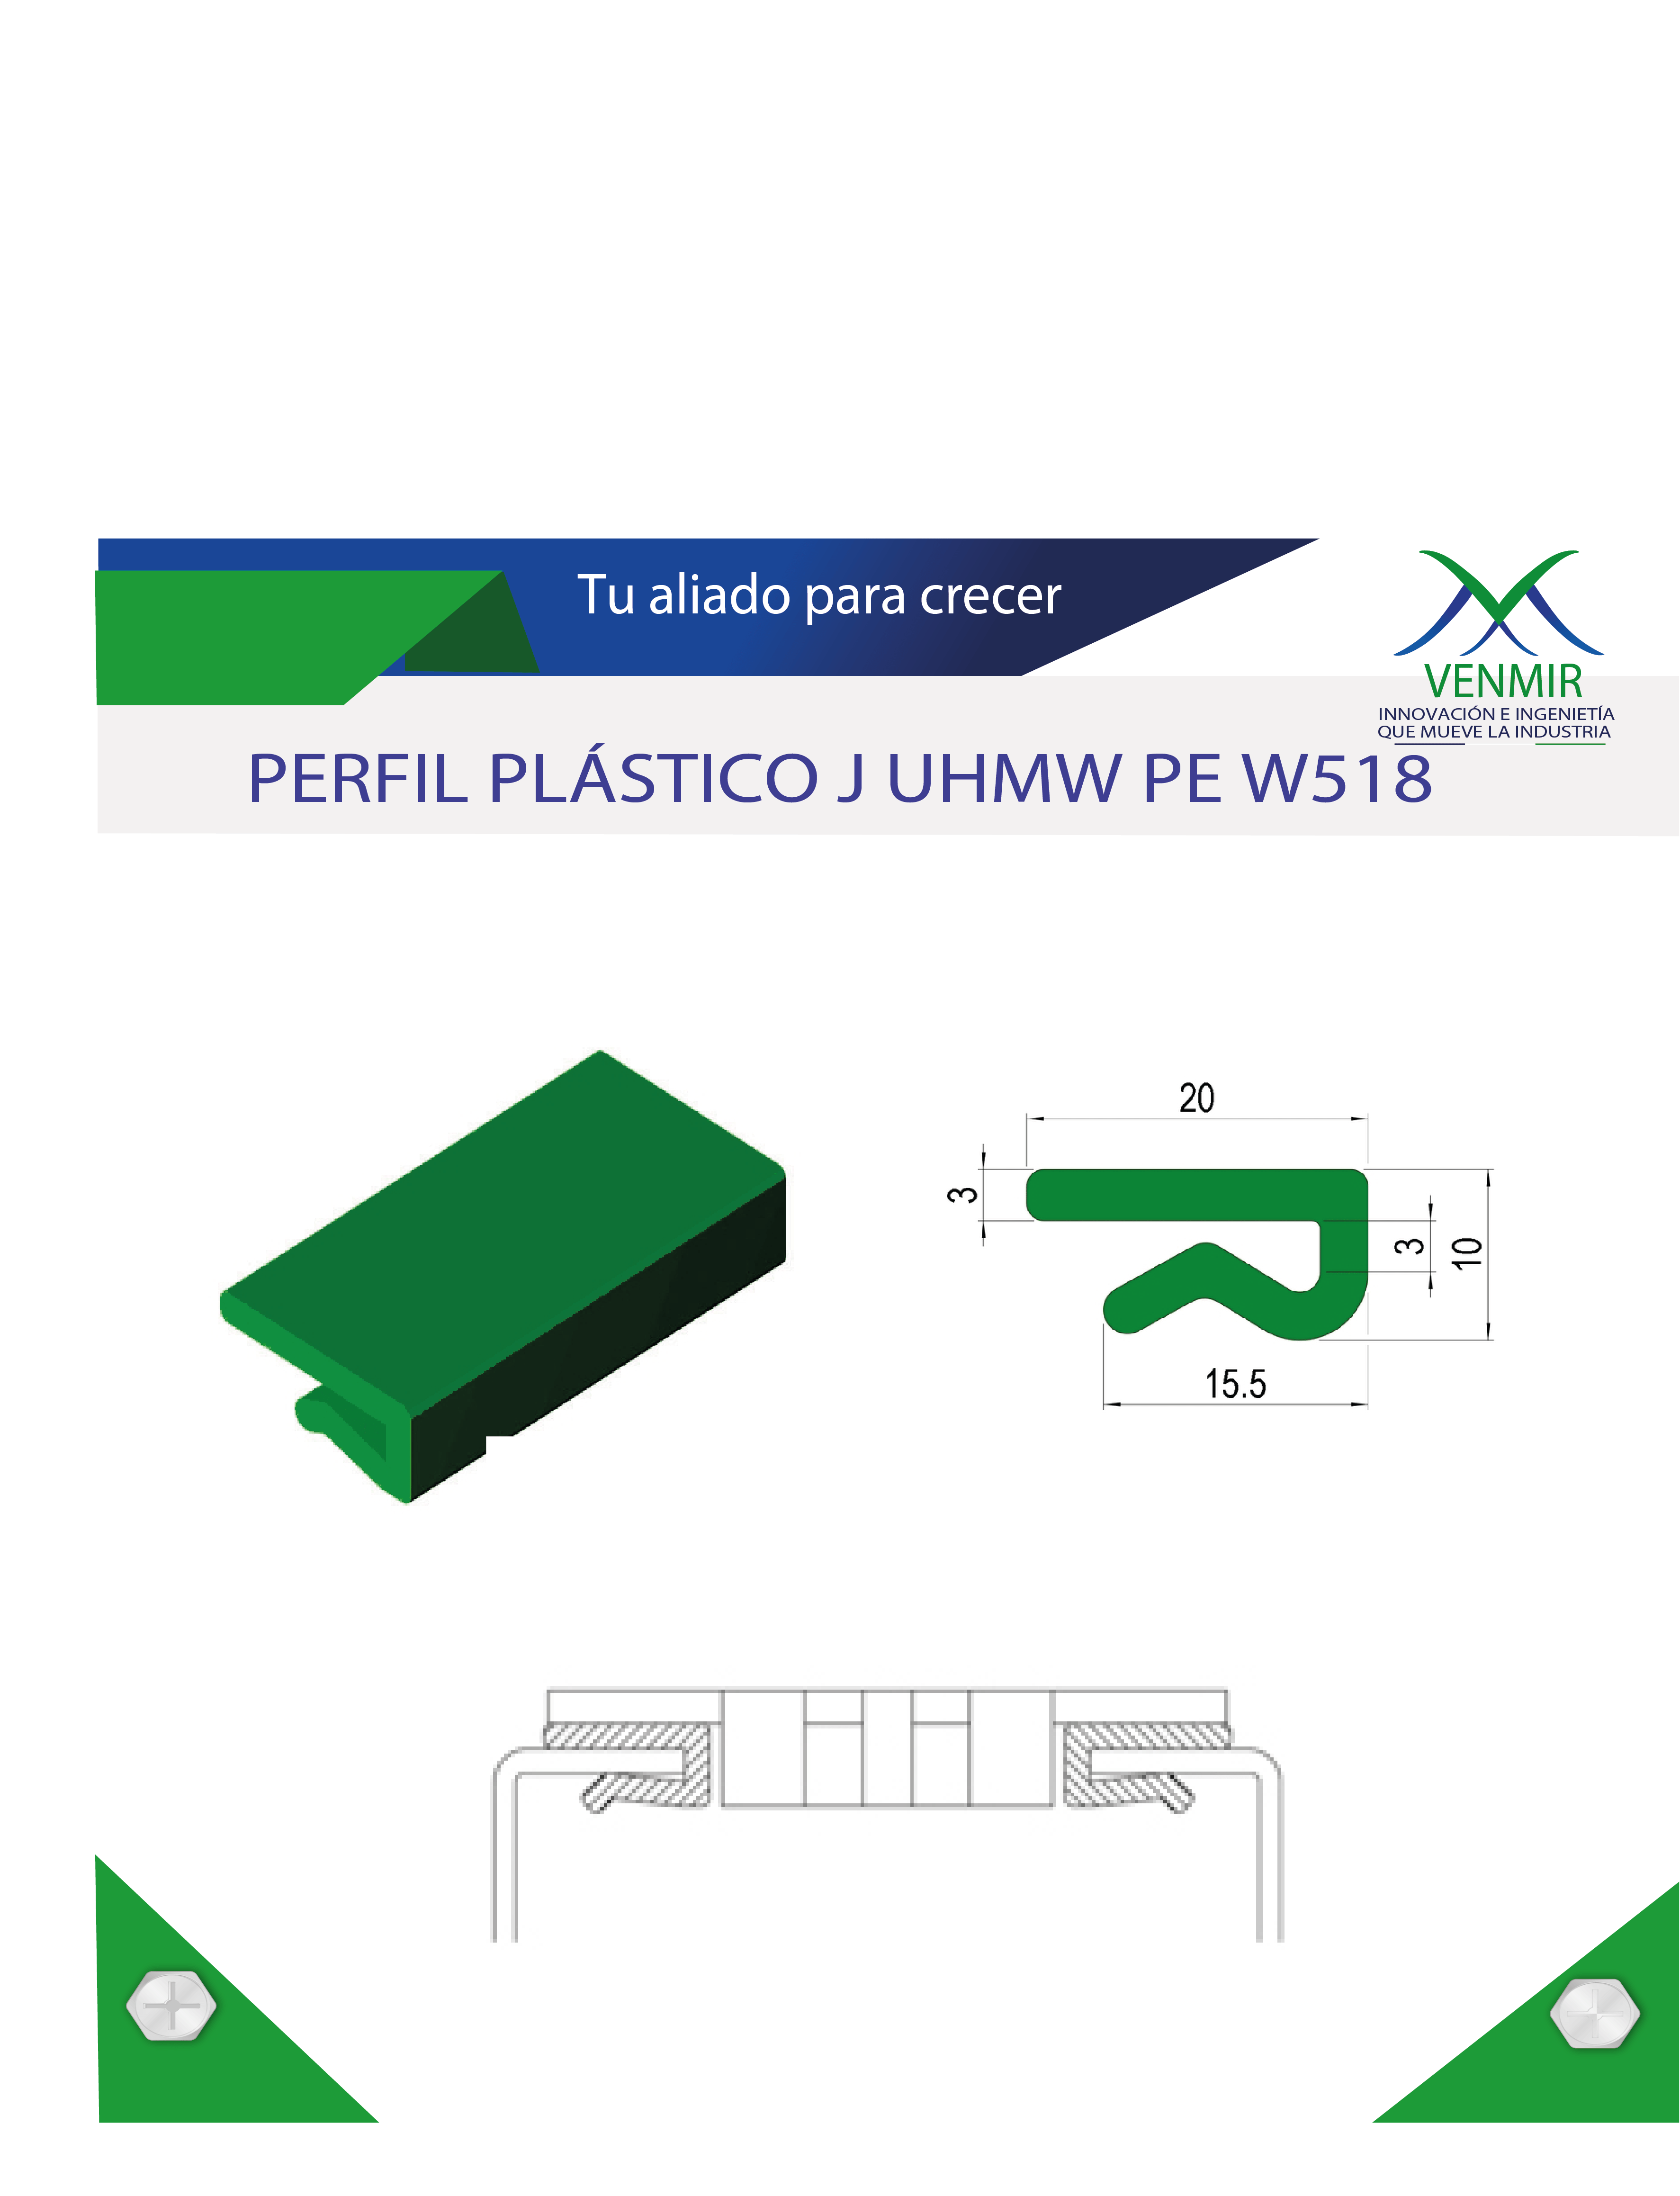 Perfil plástico de desgaste para banda transportadora J UH MW PE W5 18